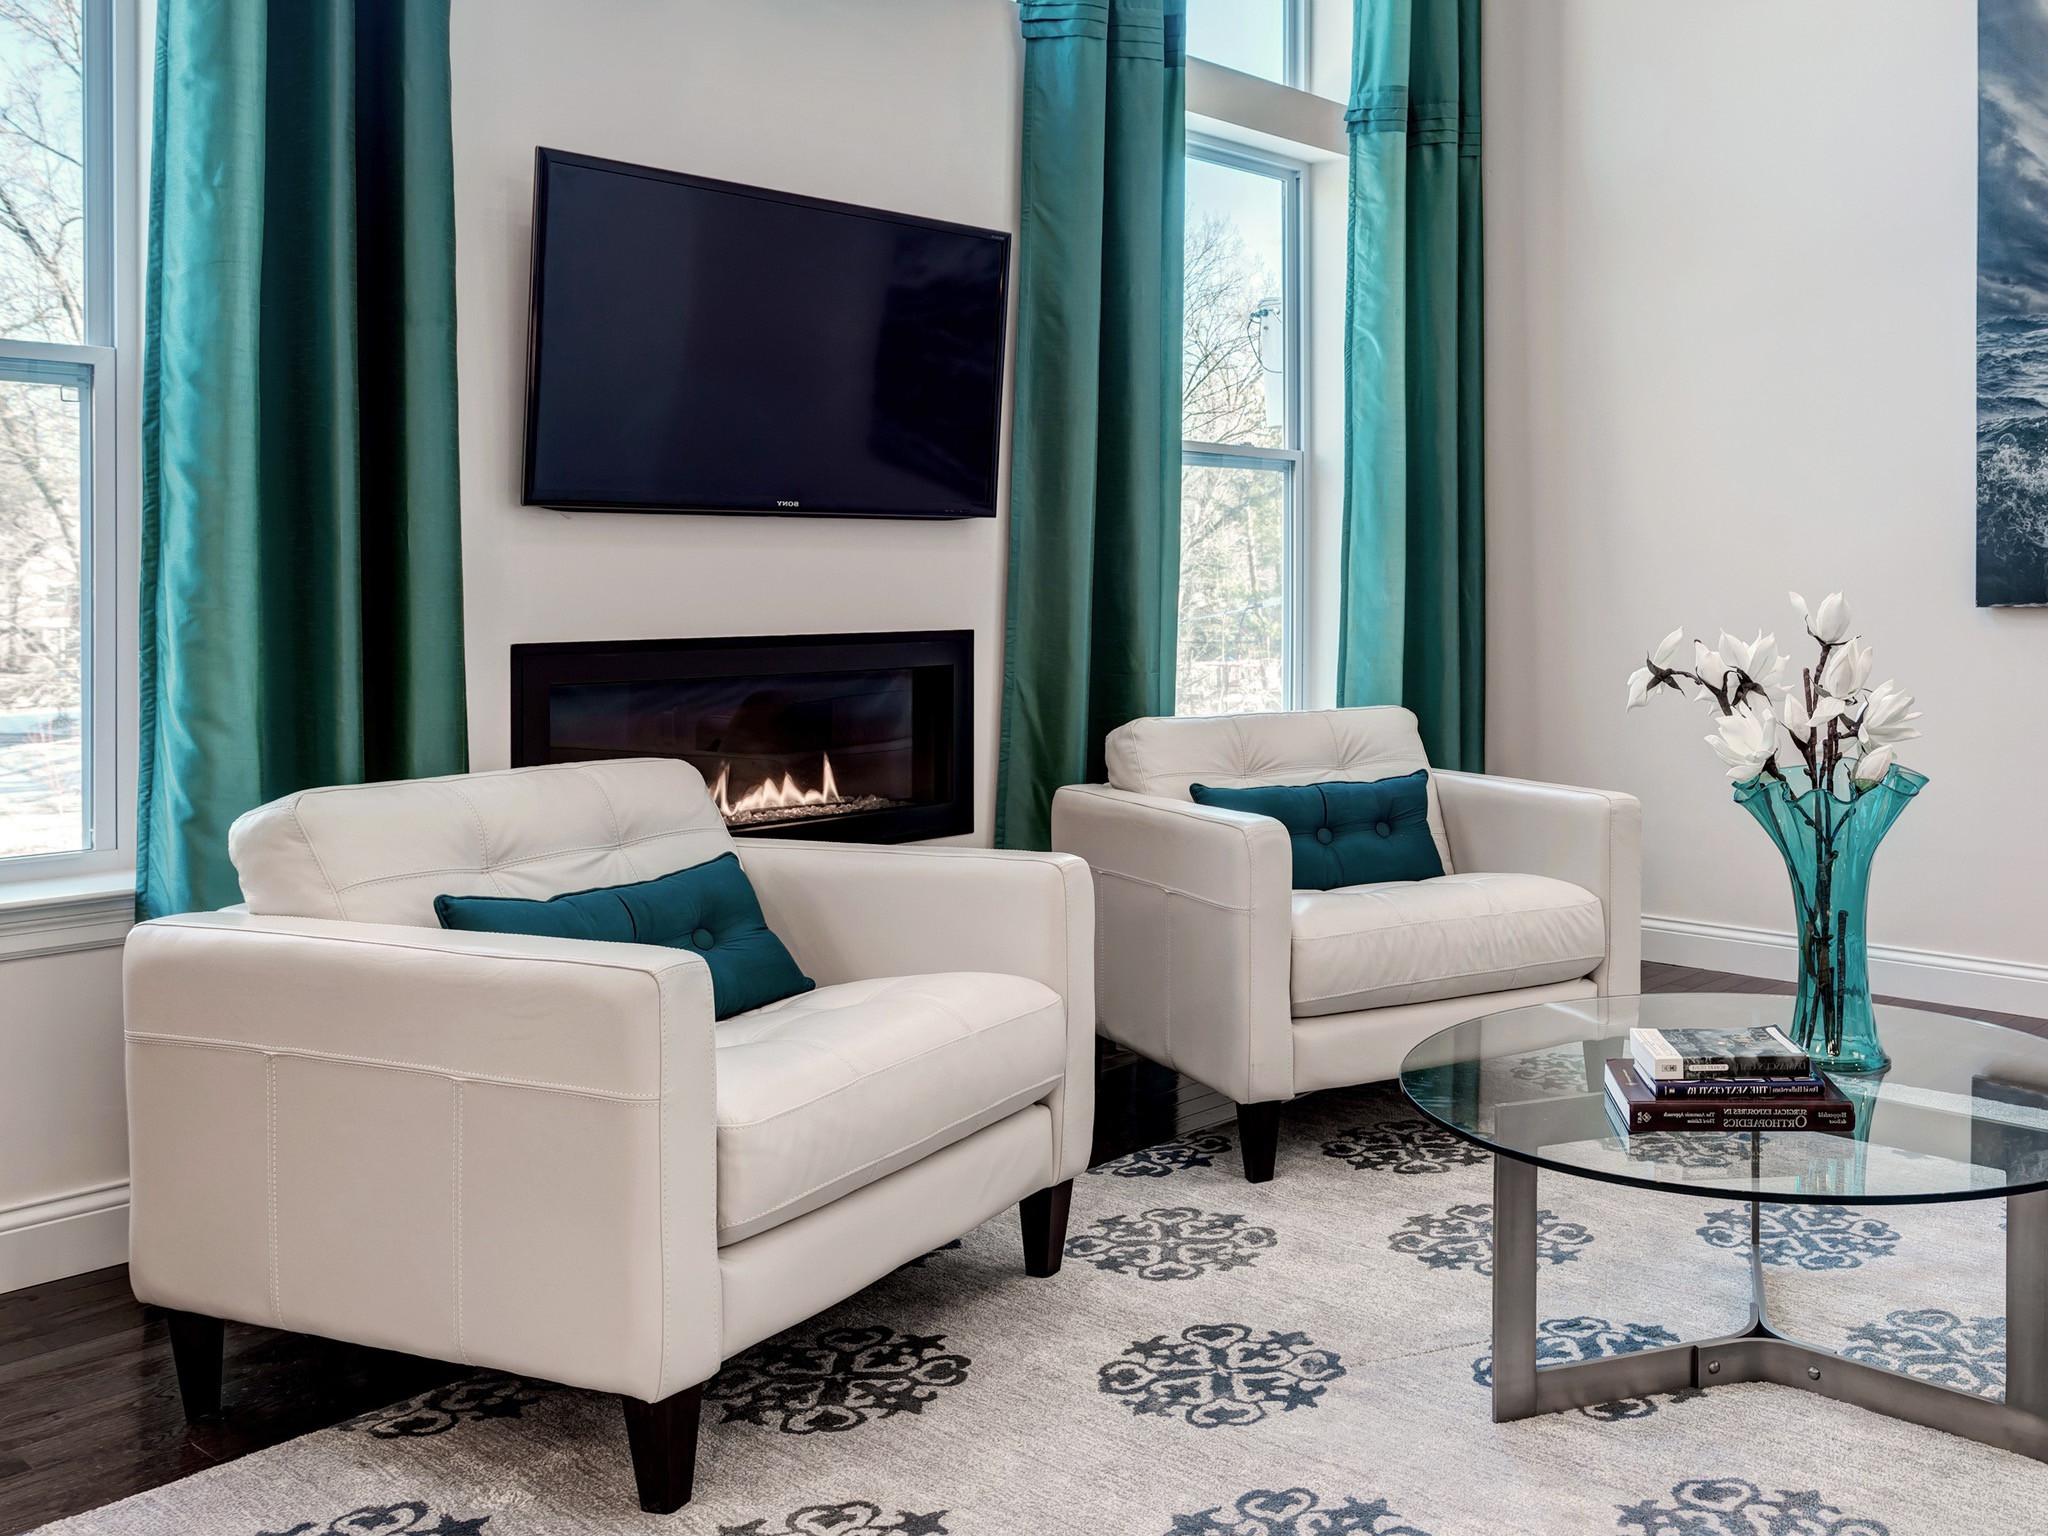 Modern Living Room Furniture Sets
 Tips For Choosing The Living Room Furniture Sets